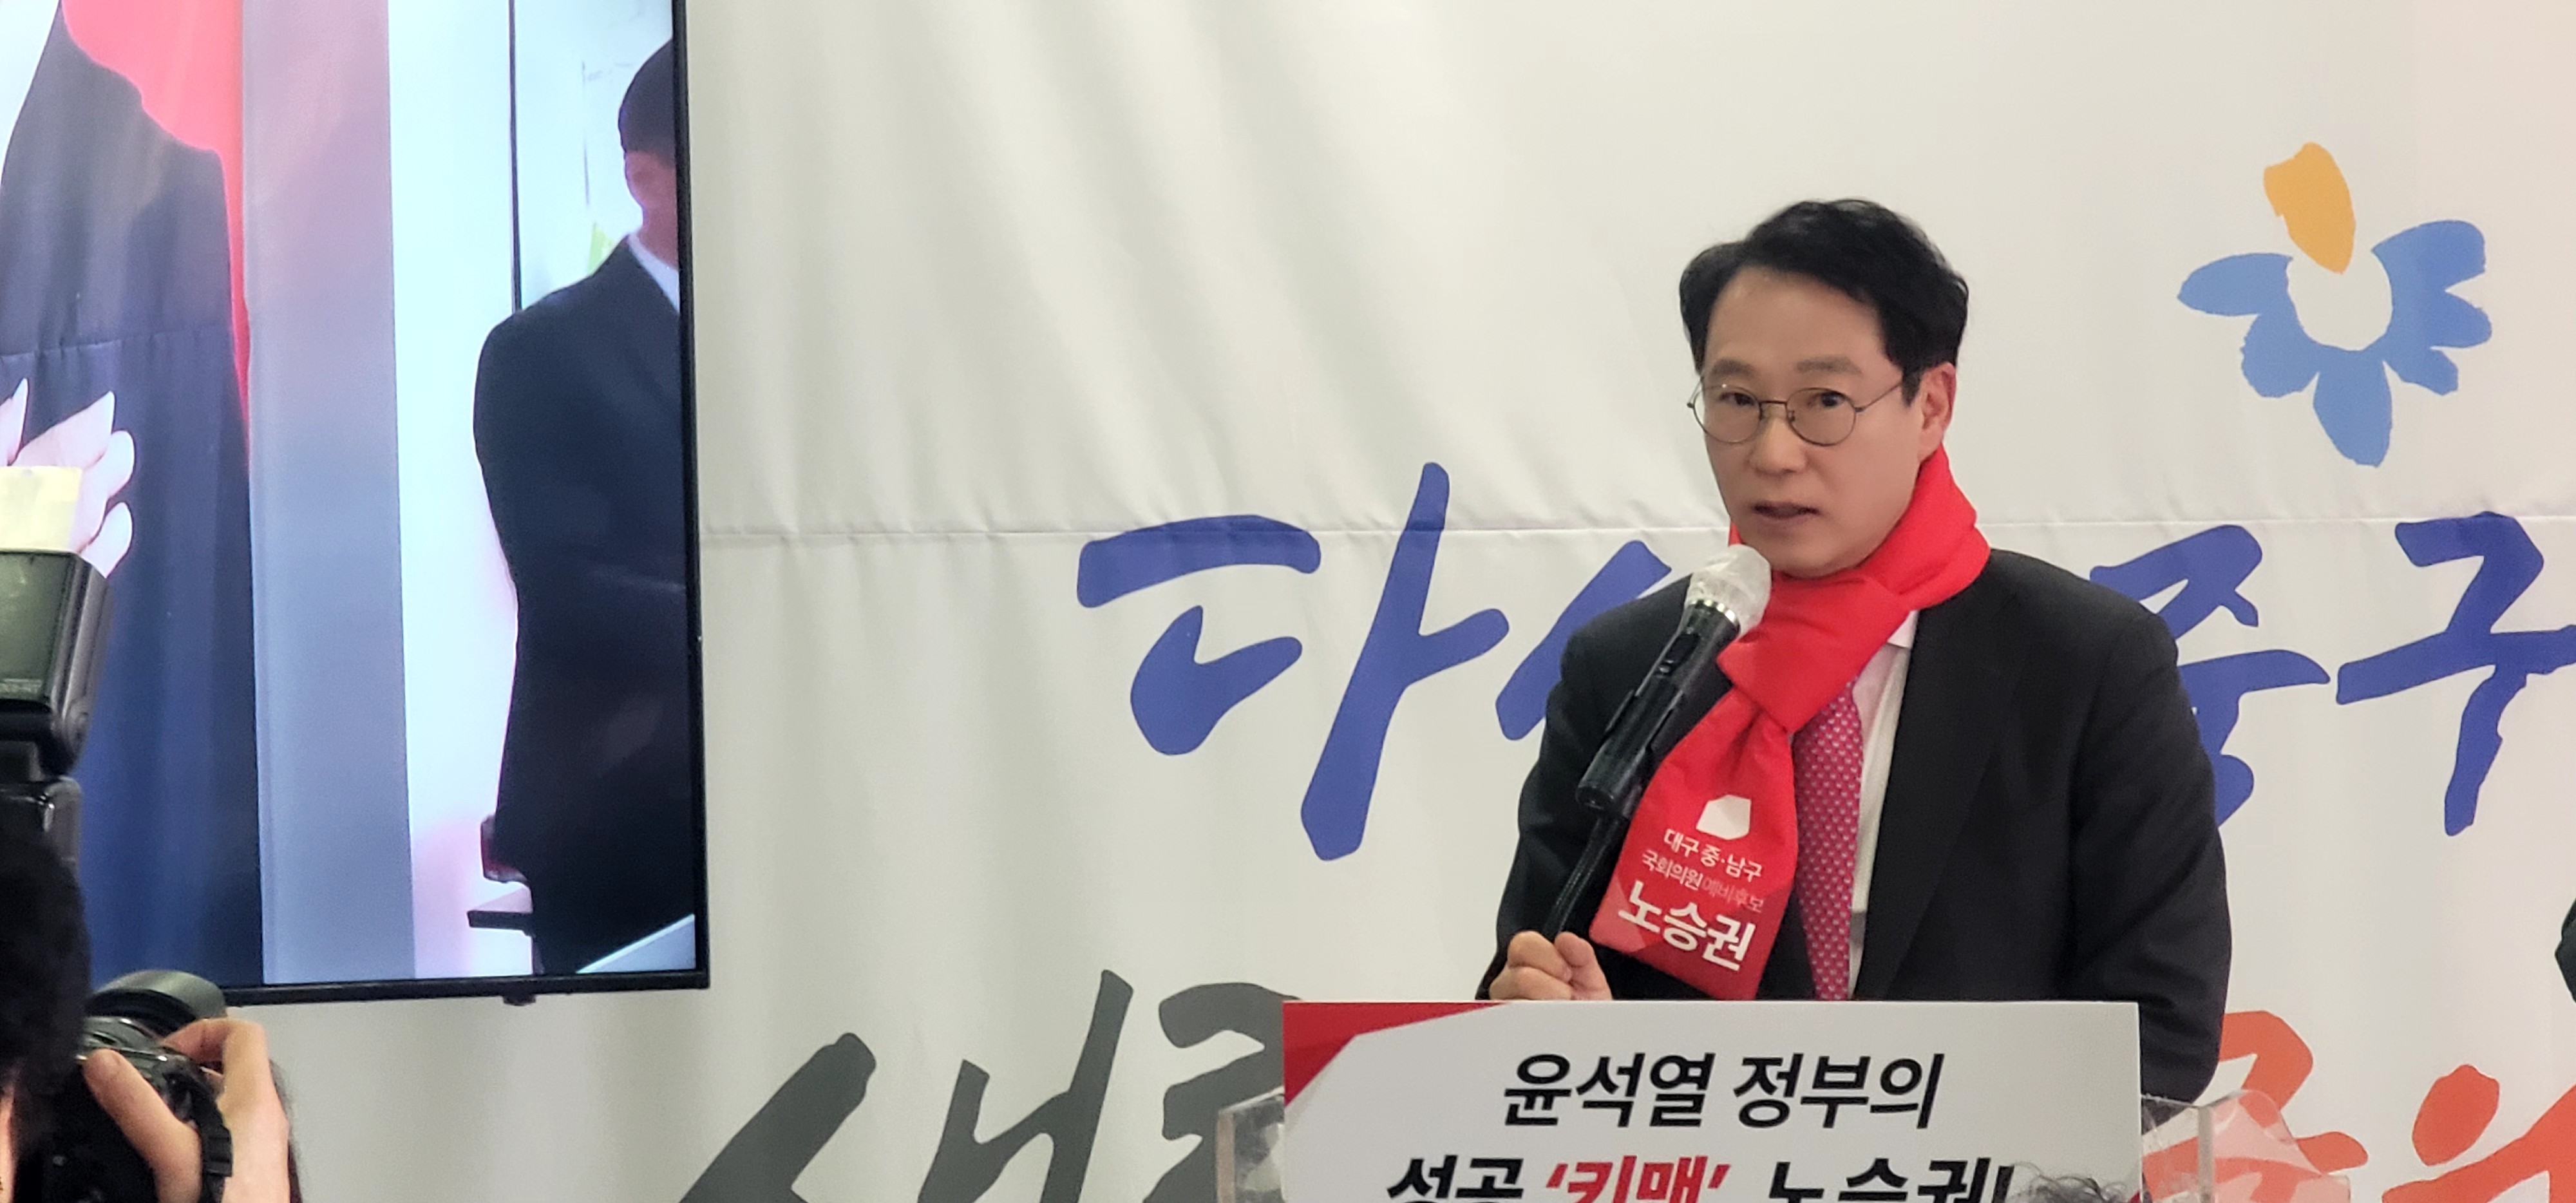 국민의힘 중남구 노승권 출마후보자 선거사무실 개소